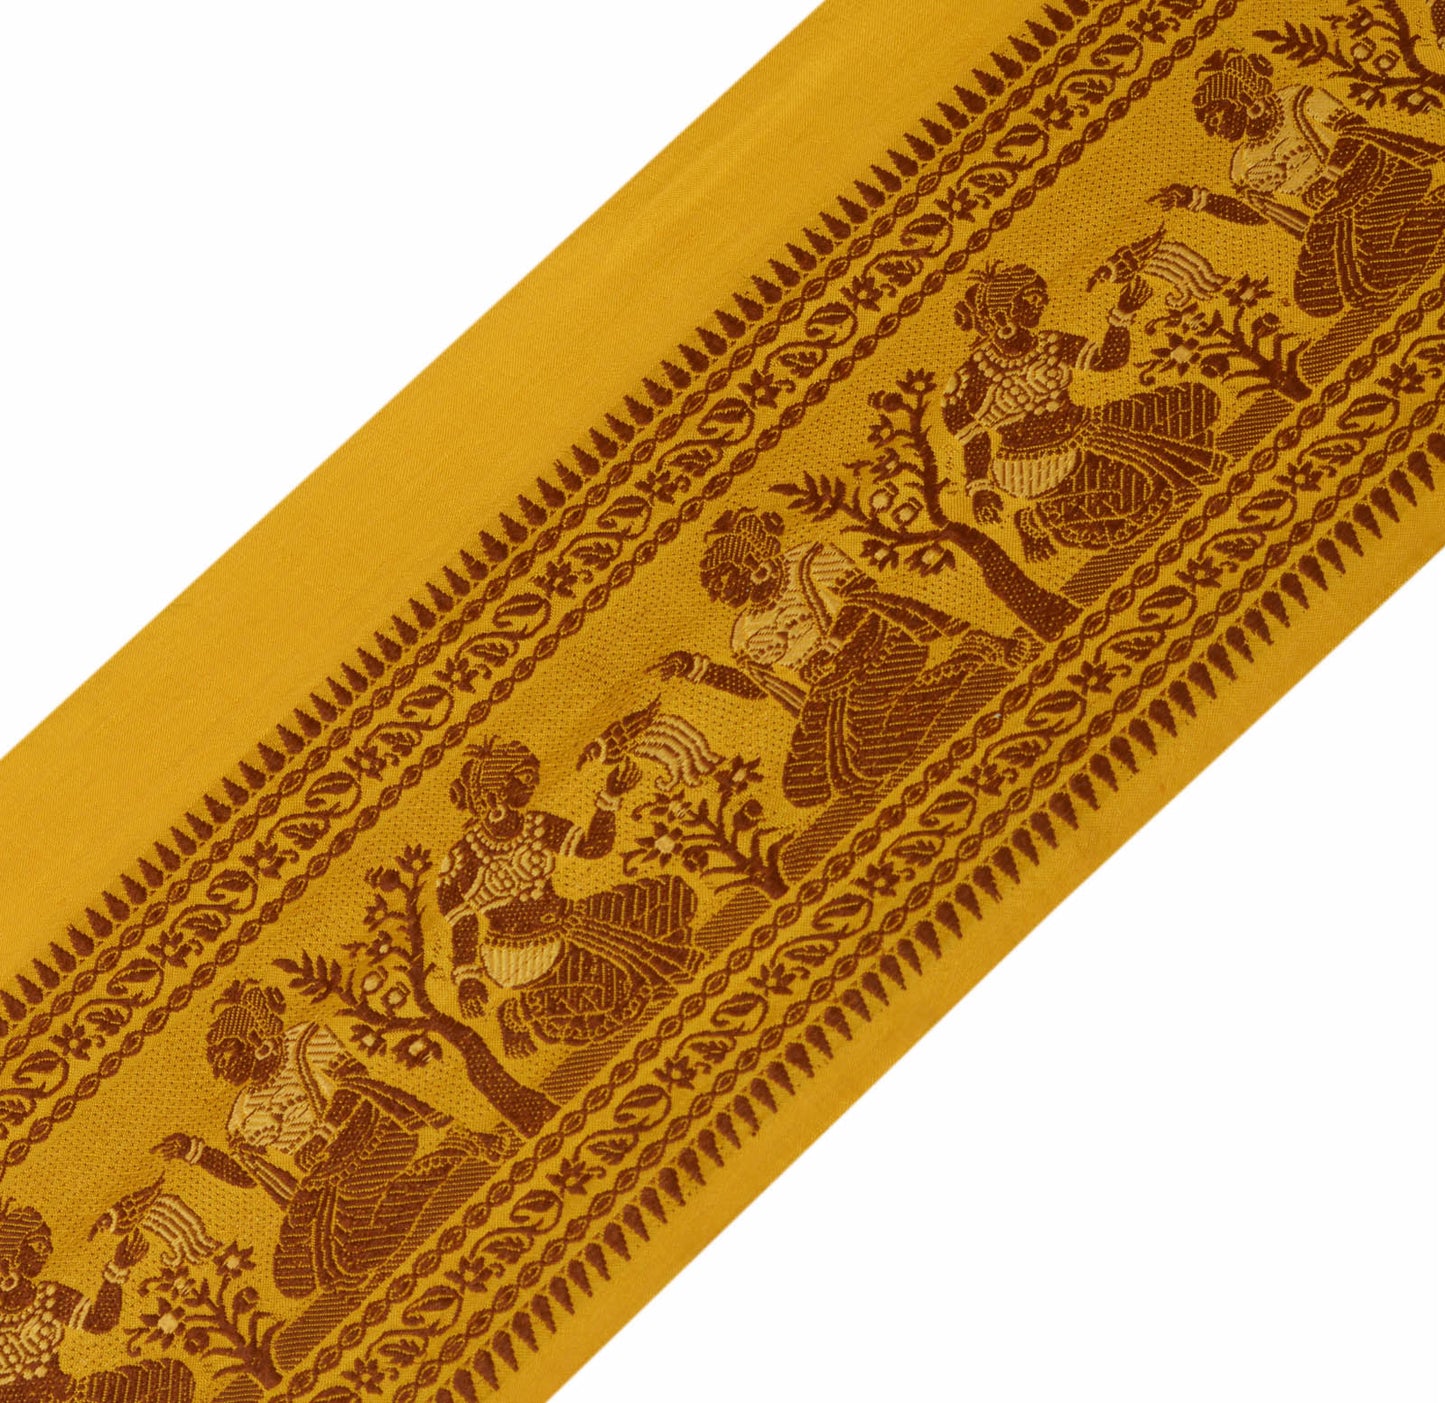 Sushila Vintage Mustard Sari Border Indian Craft Sewing Trim Weaving Lace Ribbon